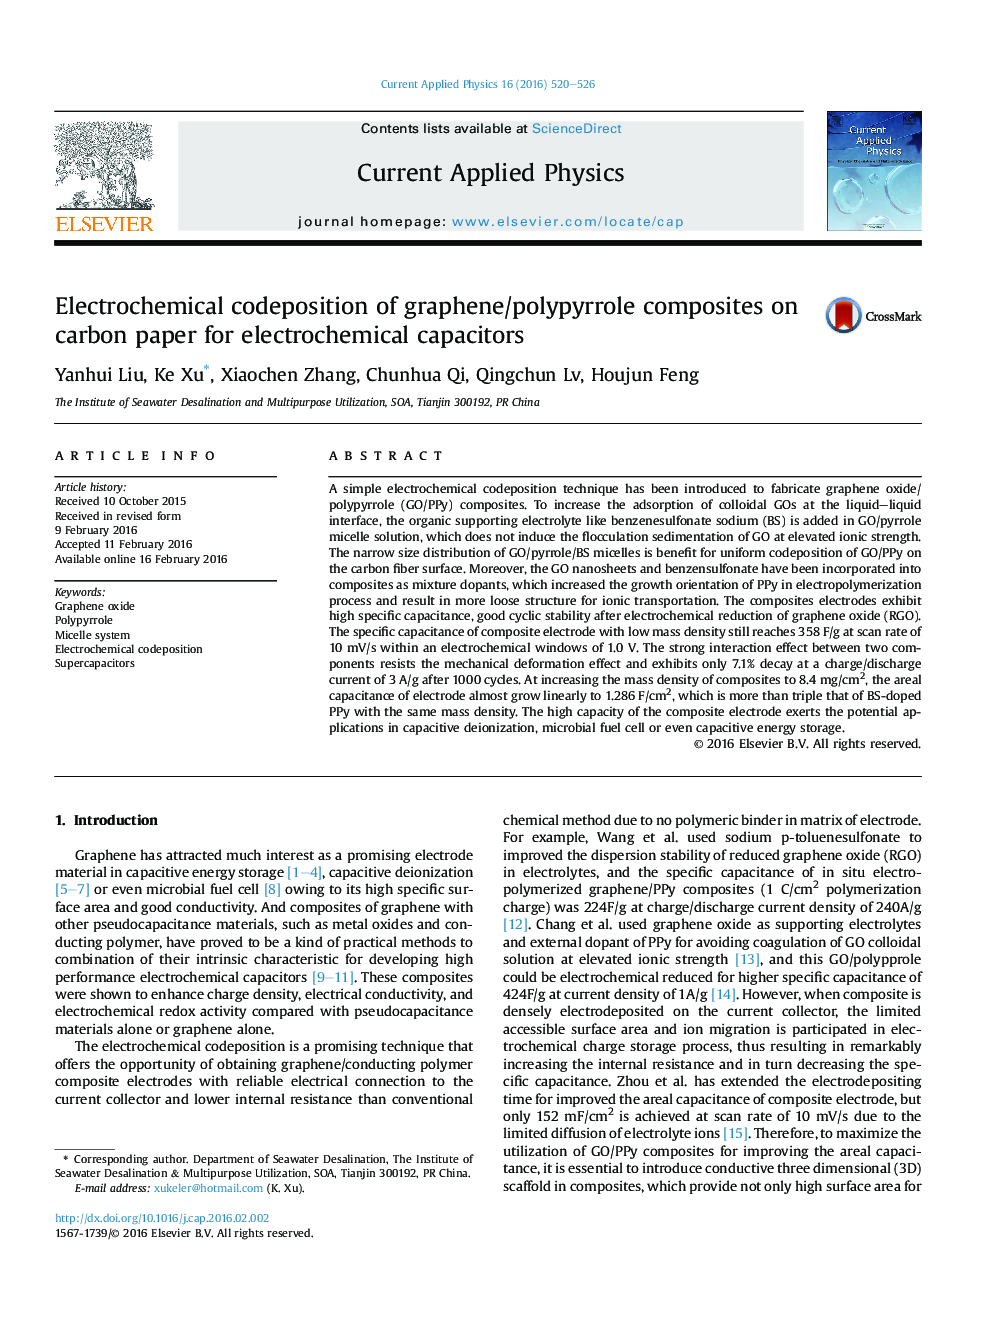 ترکیب بندی الکتروشیمیایی کامپوزیت گرافن / پلی پیلر بر روی مقاله کربن برای خازن های الکتروشیمیایی 